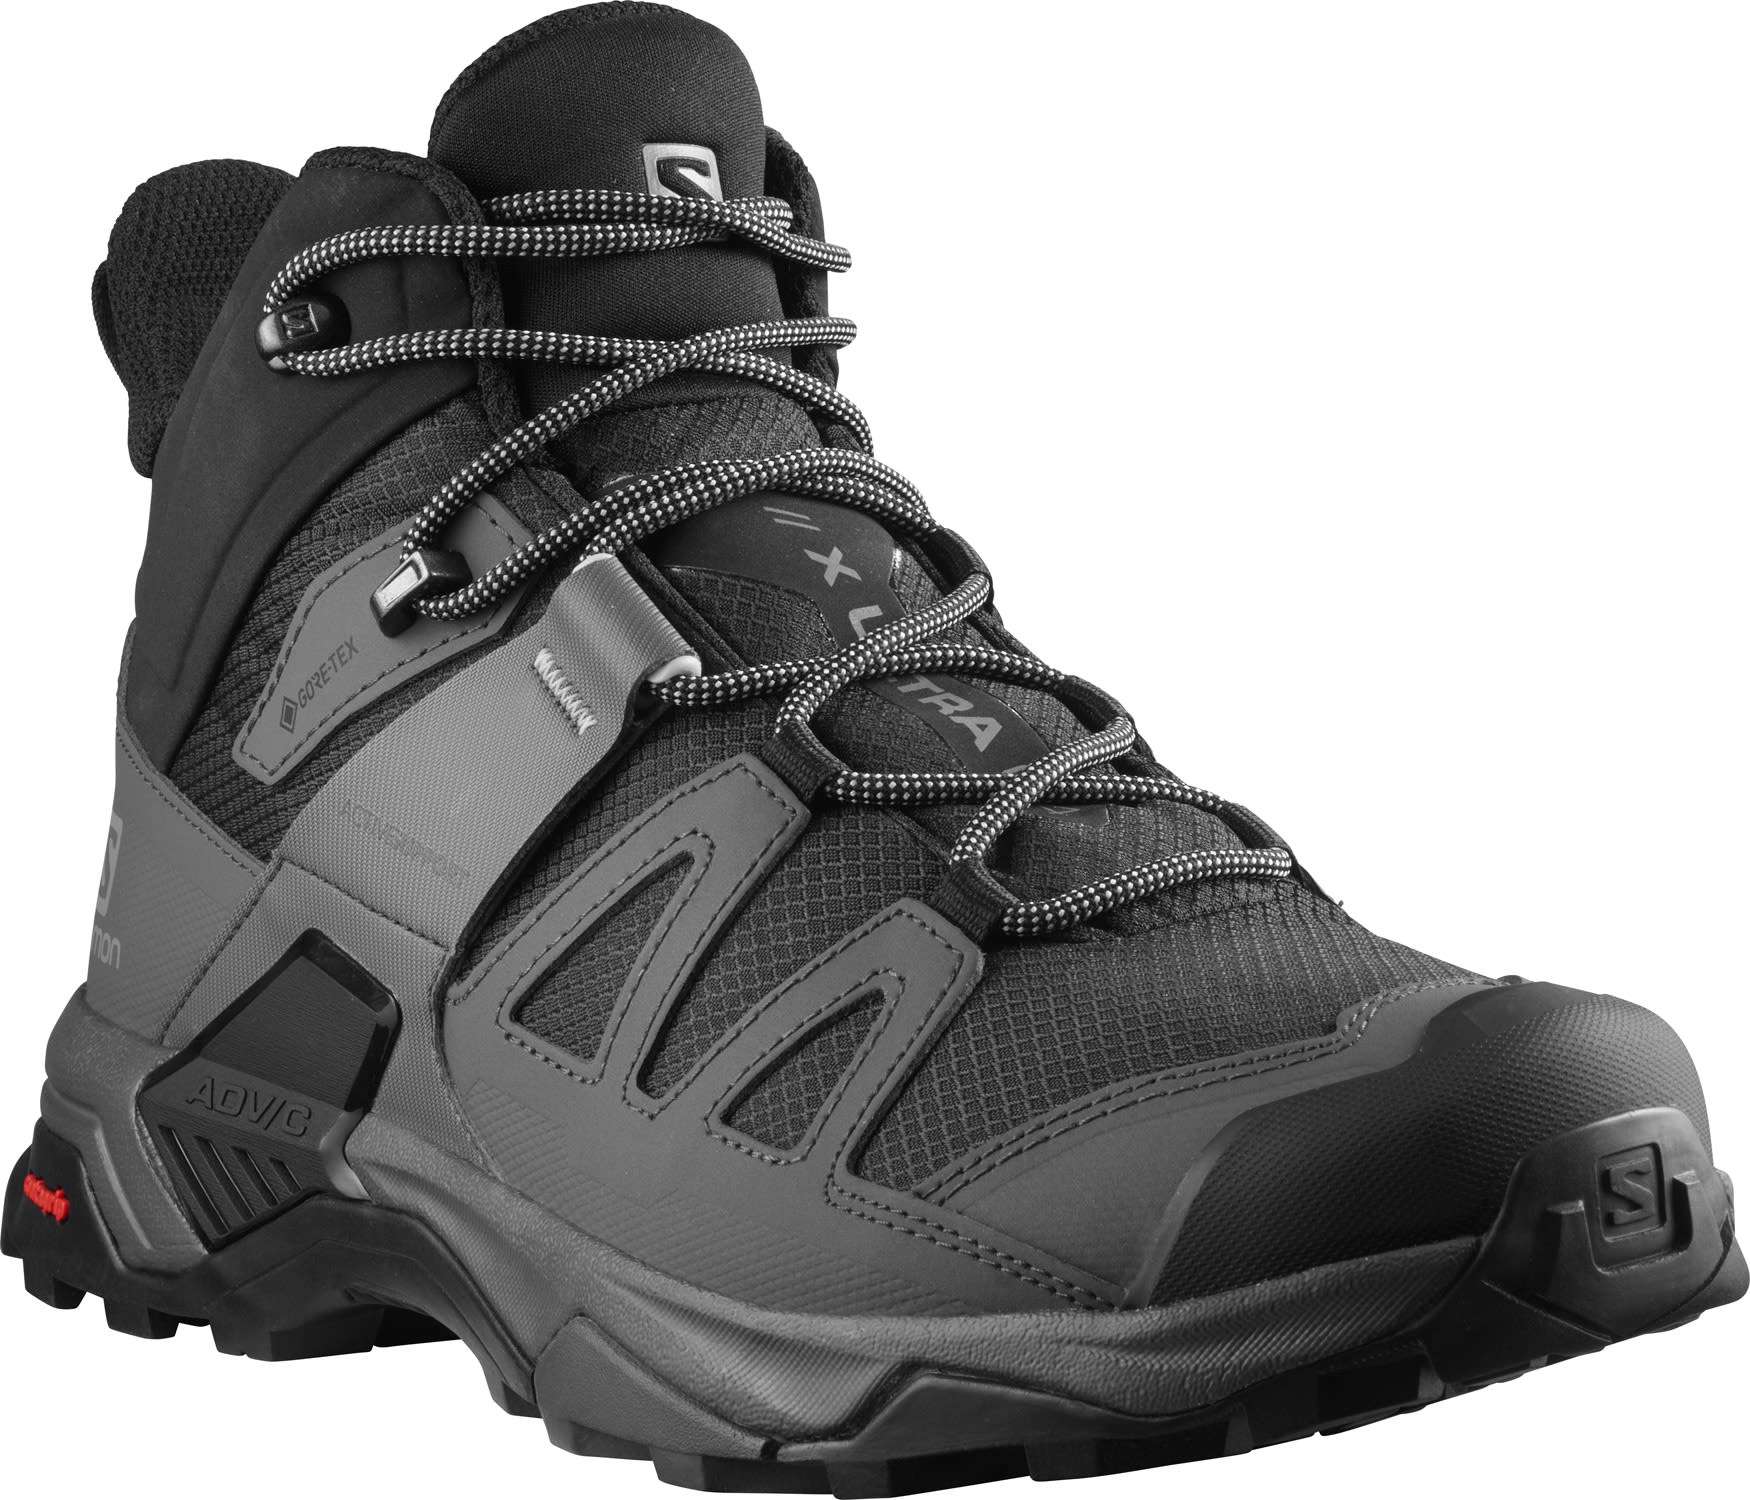 Salomon X Ultra 4 Mid GTX Wide Hiking Boots